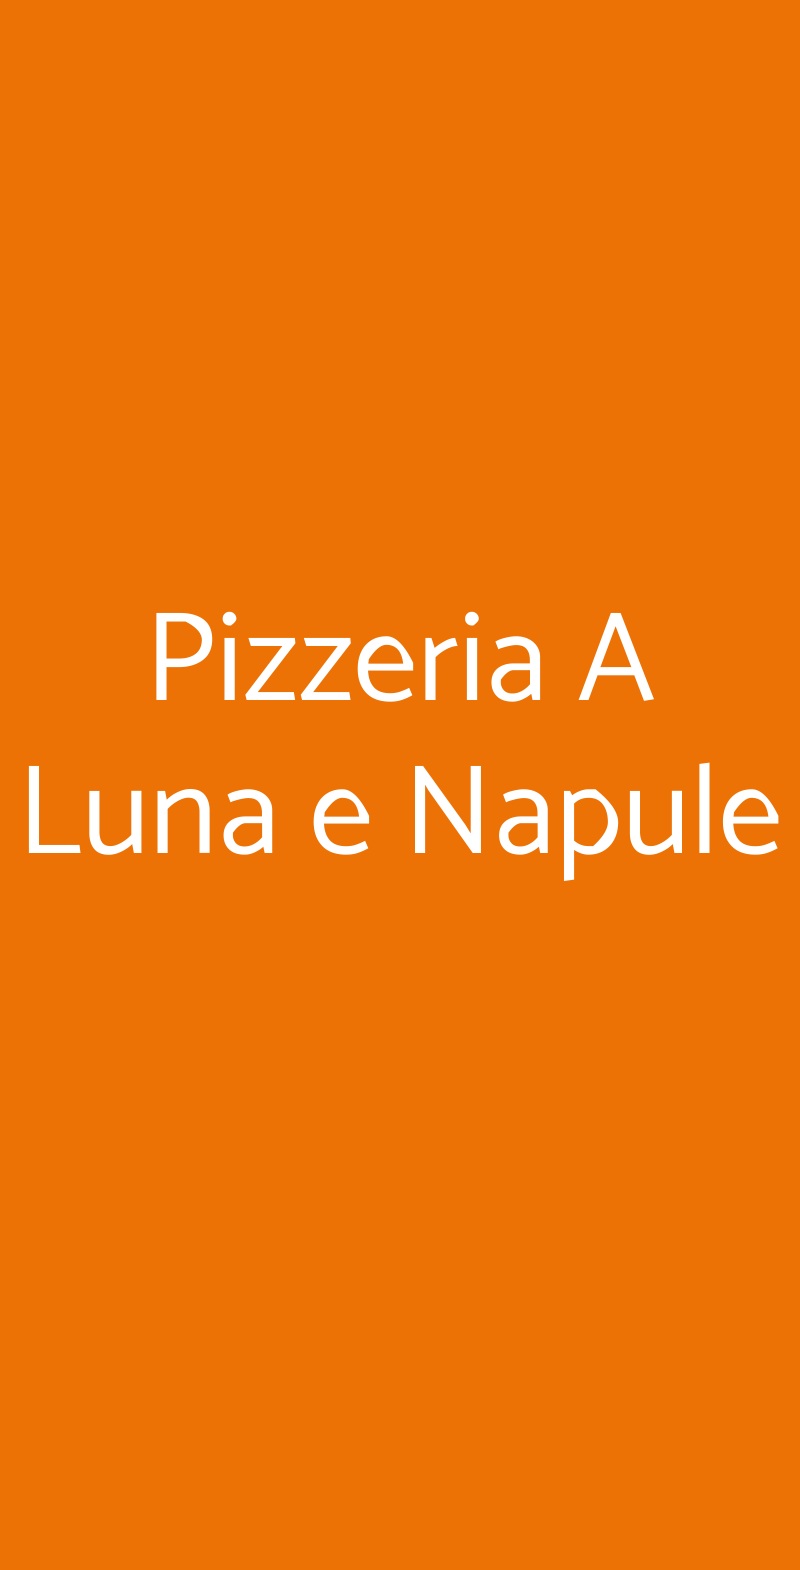 Pizzeria A Luna e Napule Bologna menù 1 pagina